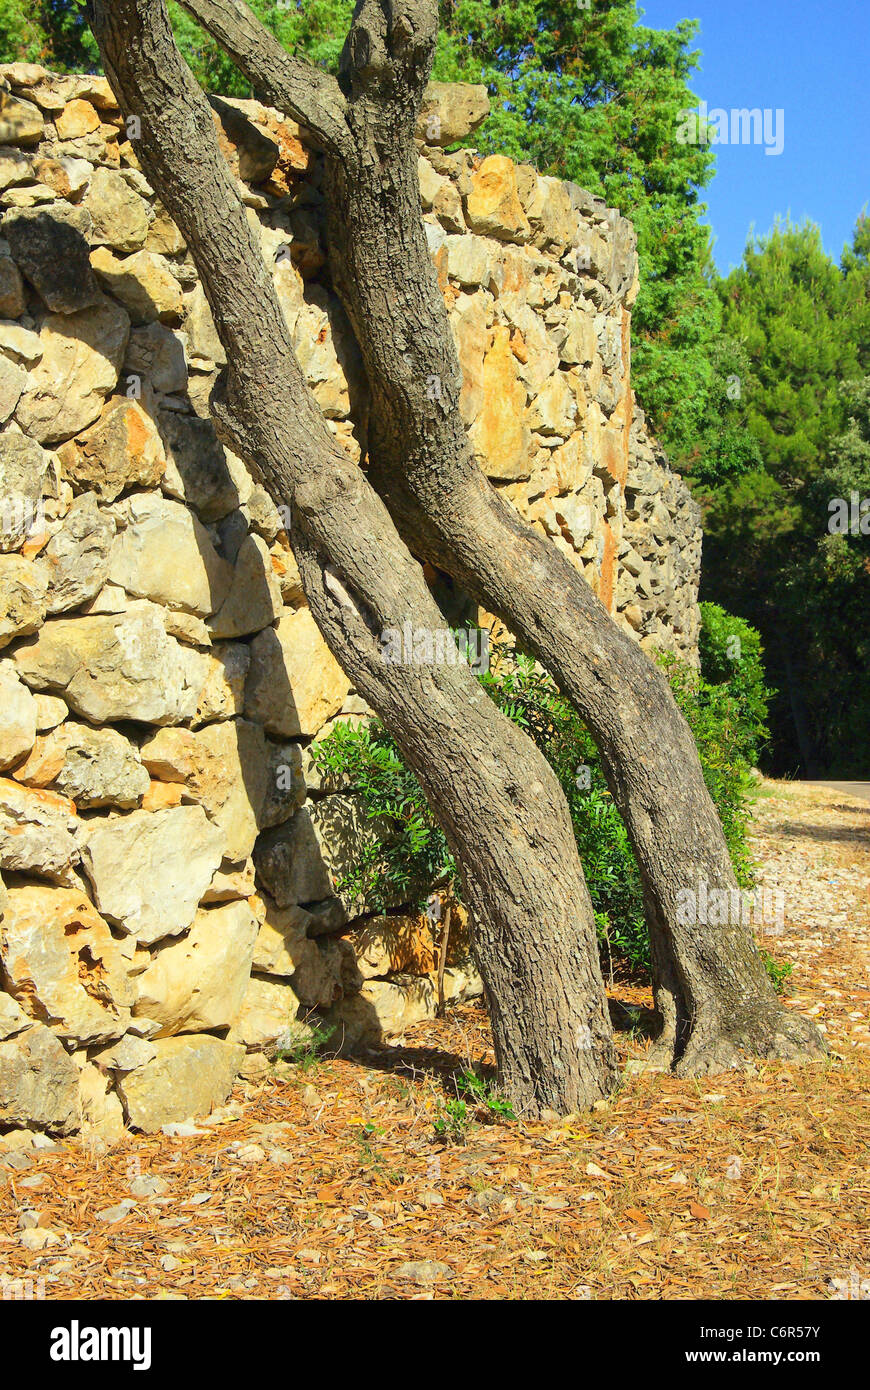 Un Olivenbaum Mauer - Olive tree sulla parete 02 Foto Stock